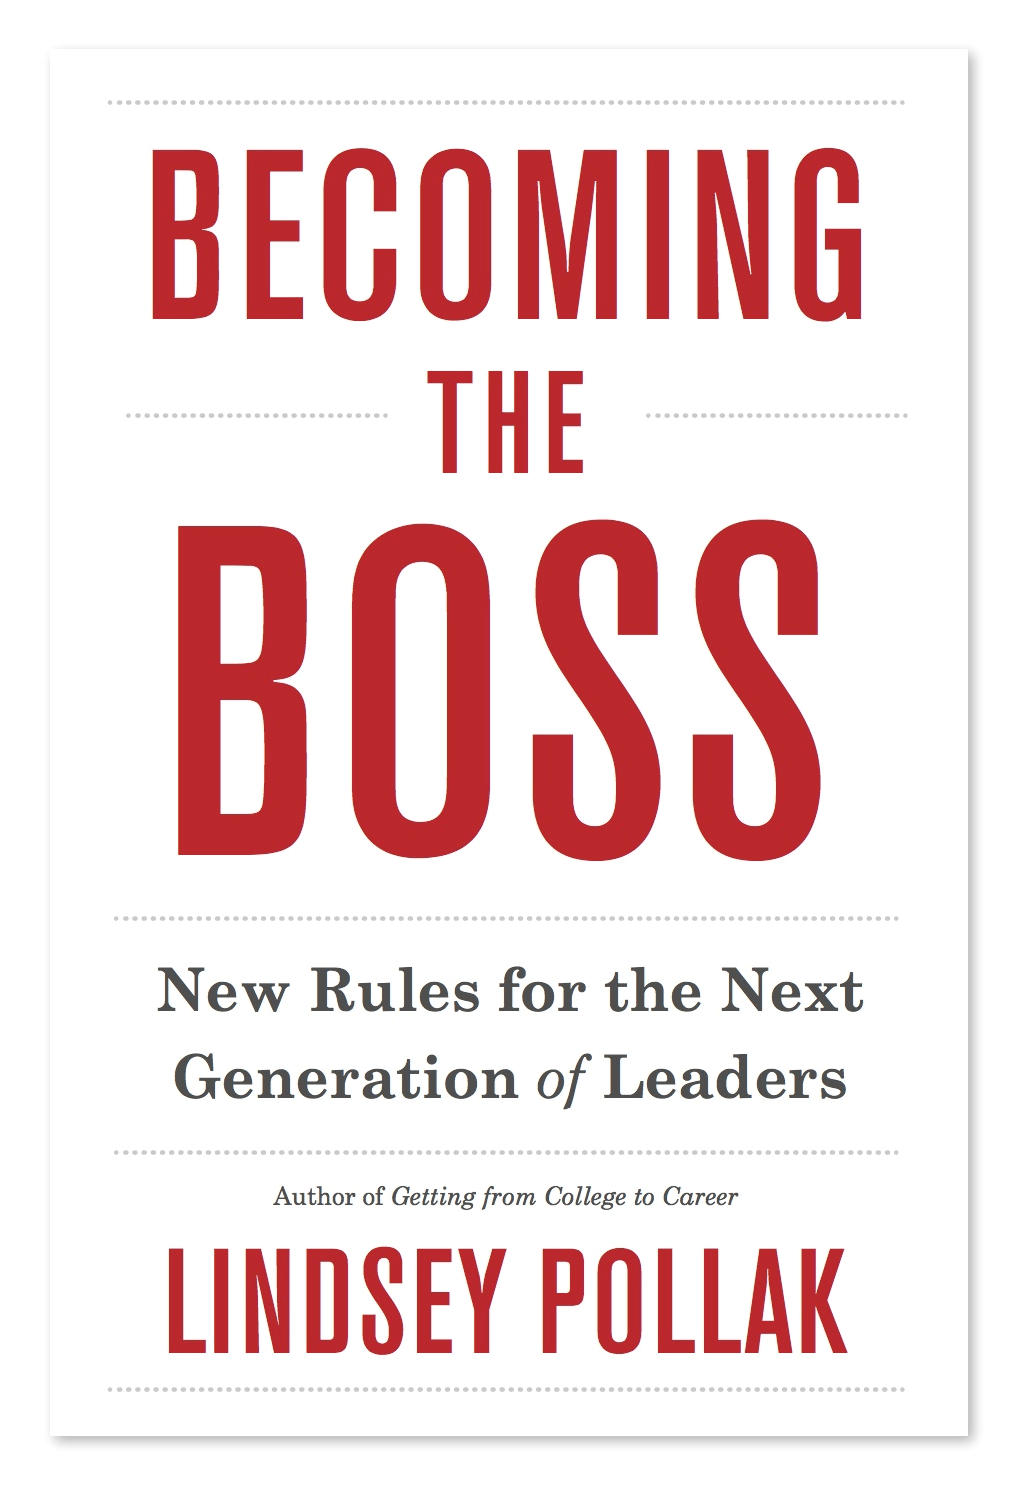 Libros sobre liderazgo - Tapa del libro "Becoming the Boss"